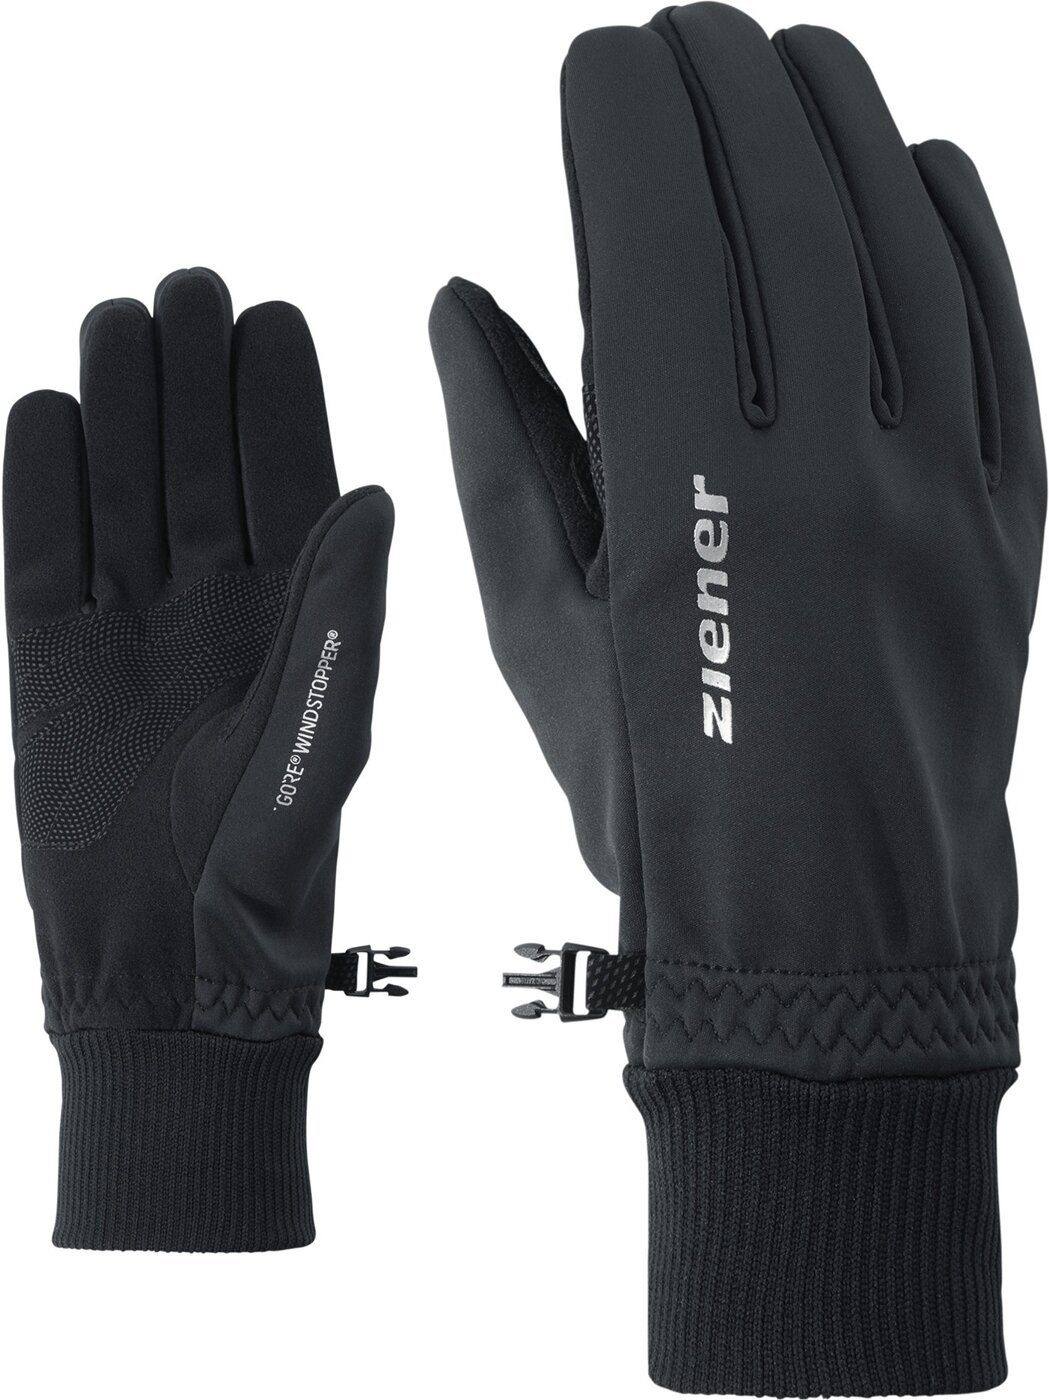 IDEALIST 12 black WS Multisporthandschuhe multisport Ziener glove